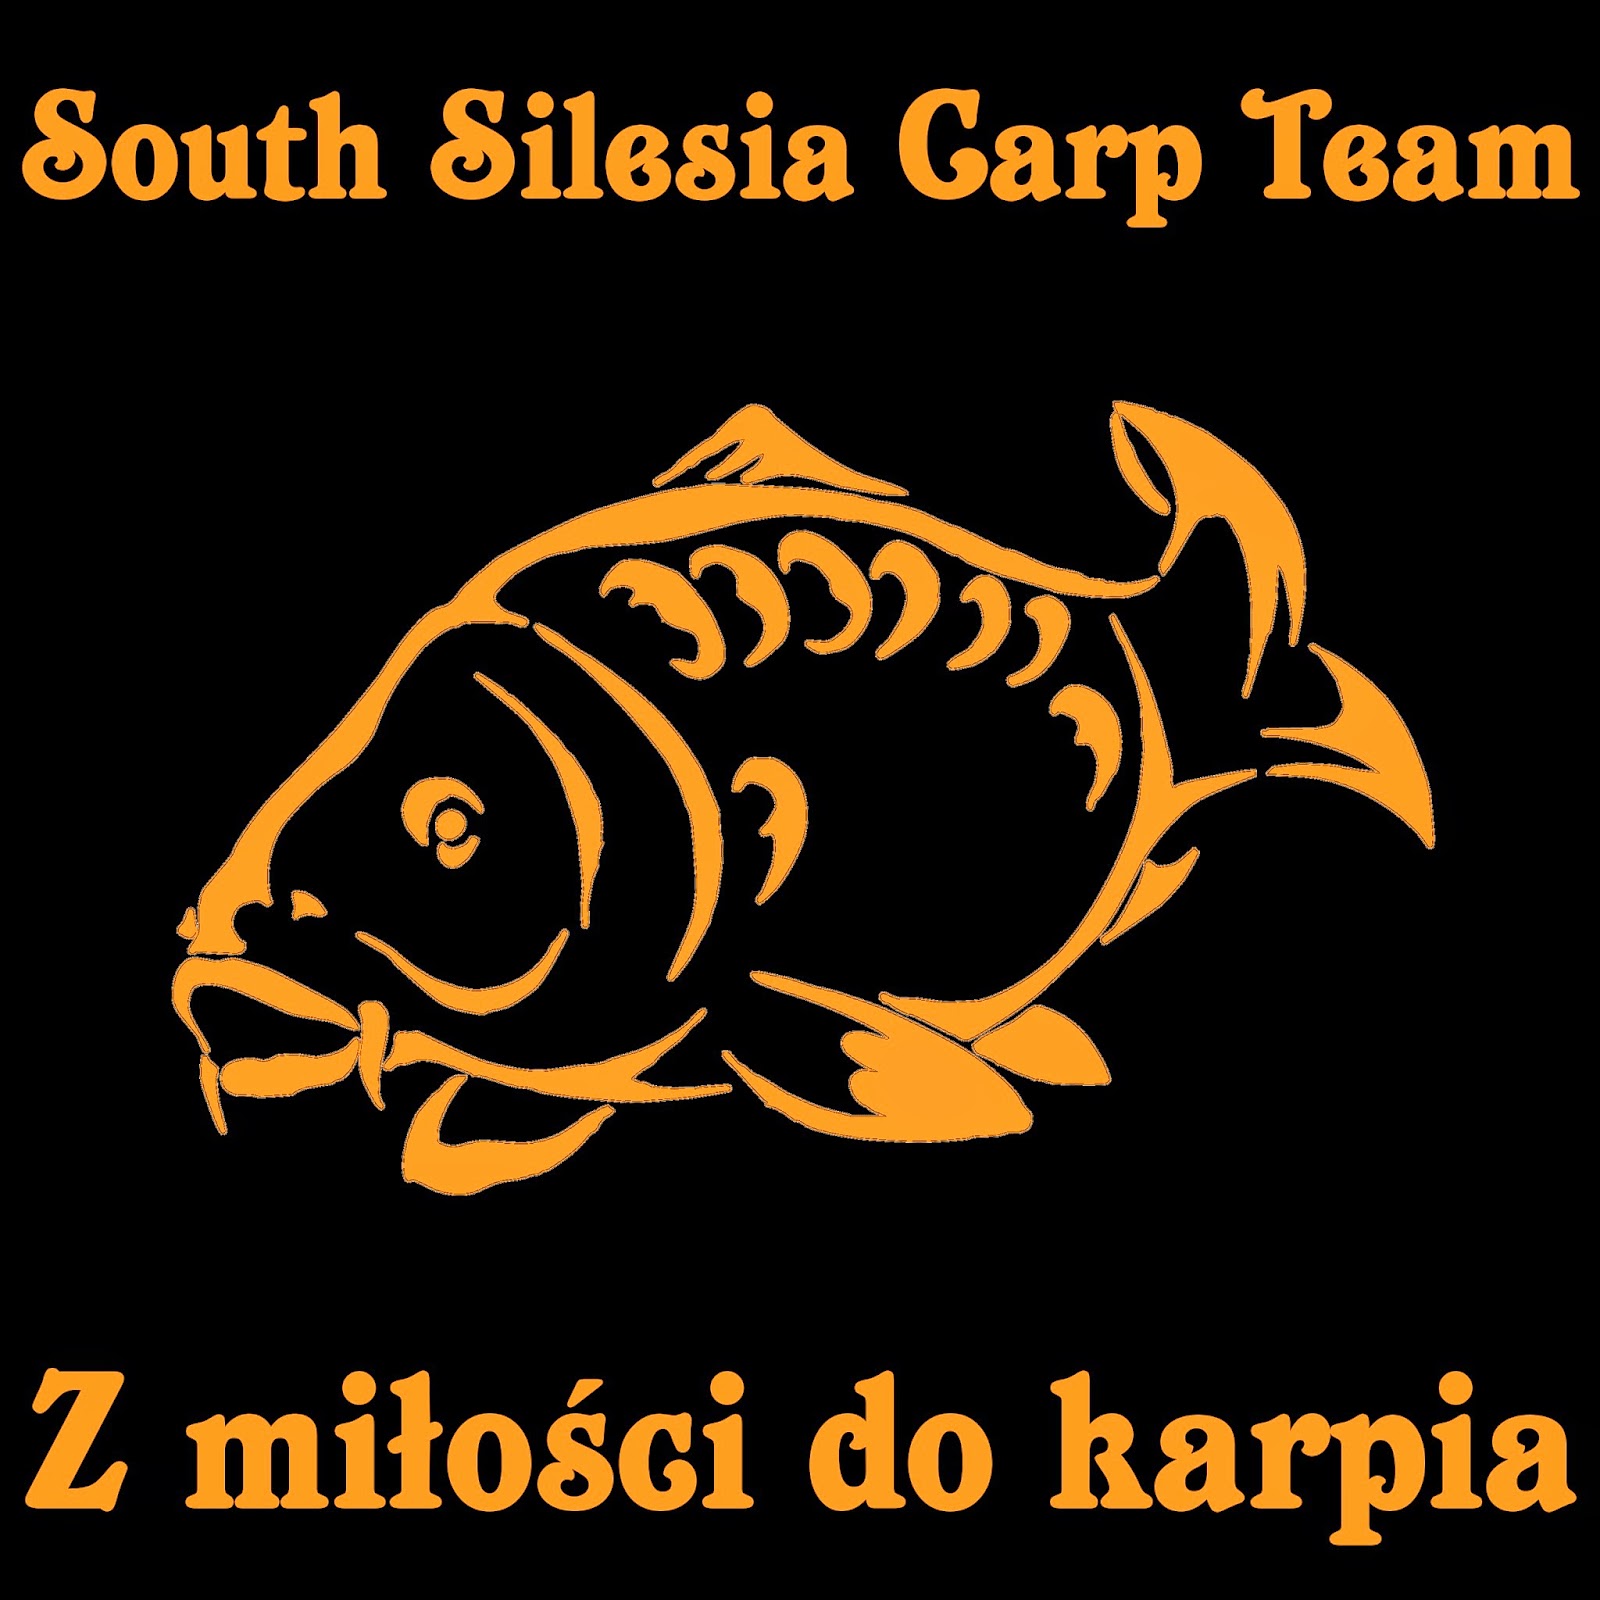 http://ssc-team.blogspot.com/